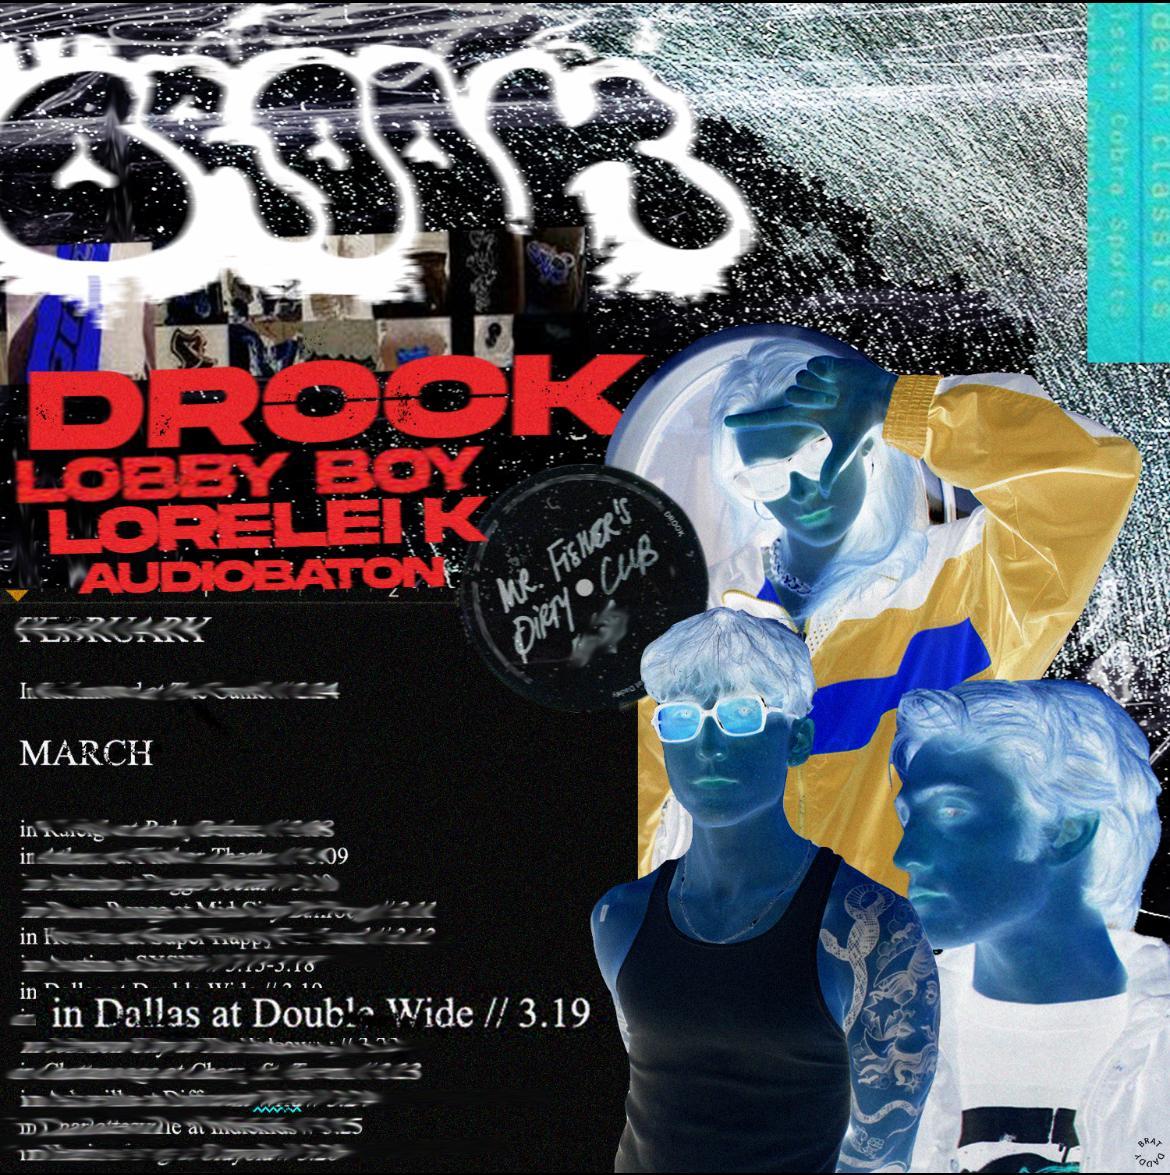 Drook  /  Lorelei K  /  Lobby Boy  /  Audiobaton